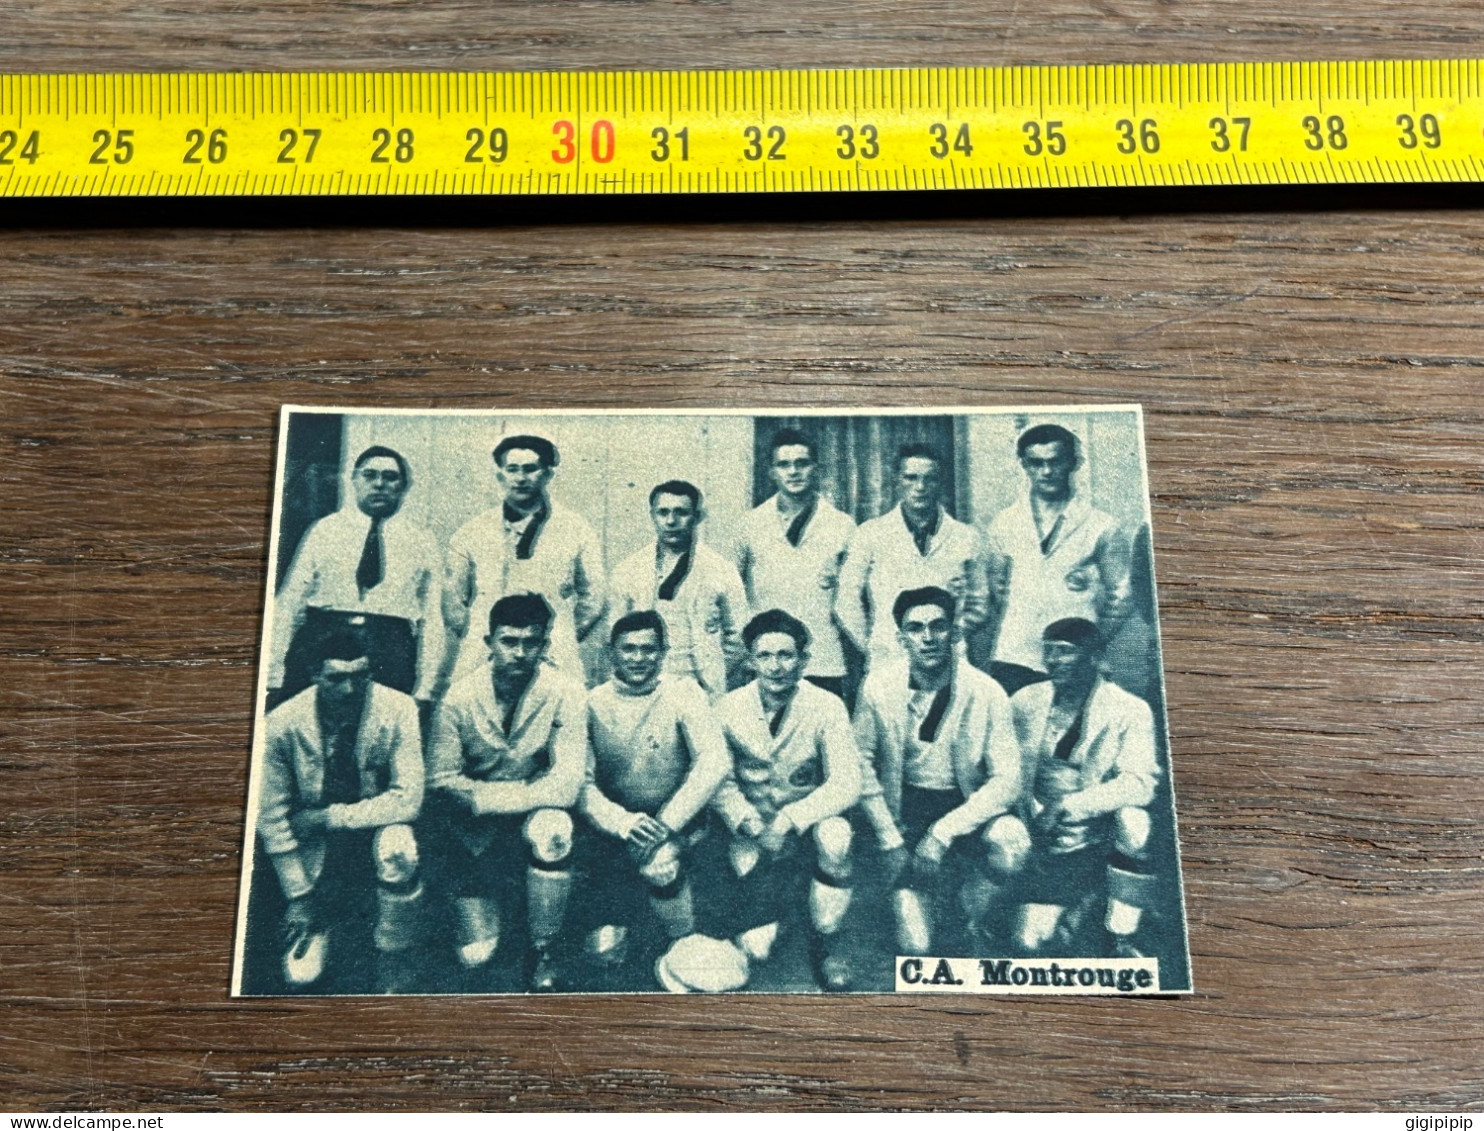 1928 MI équipe Football C.A. Montrouge - Verzamelingen